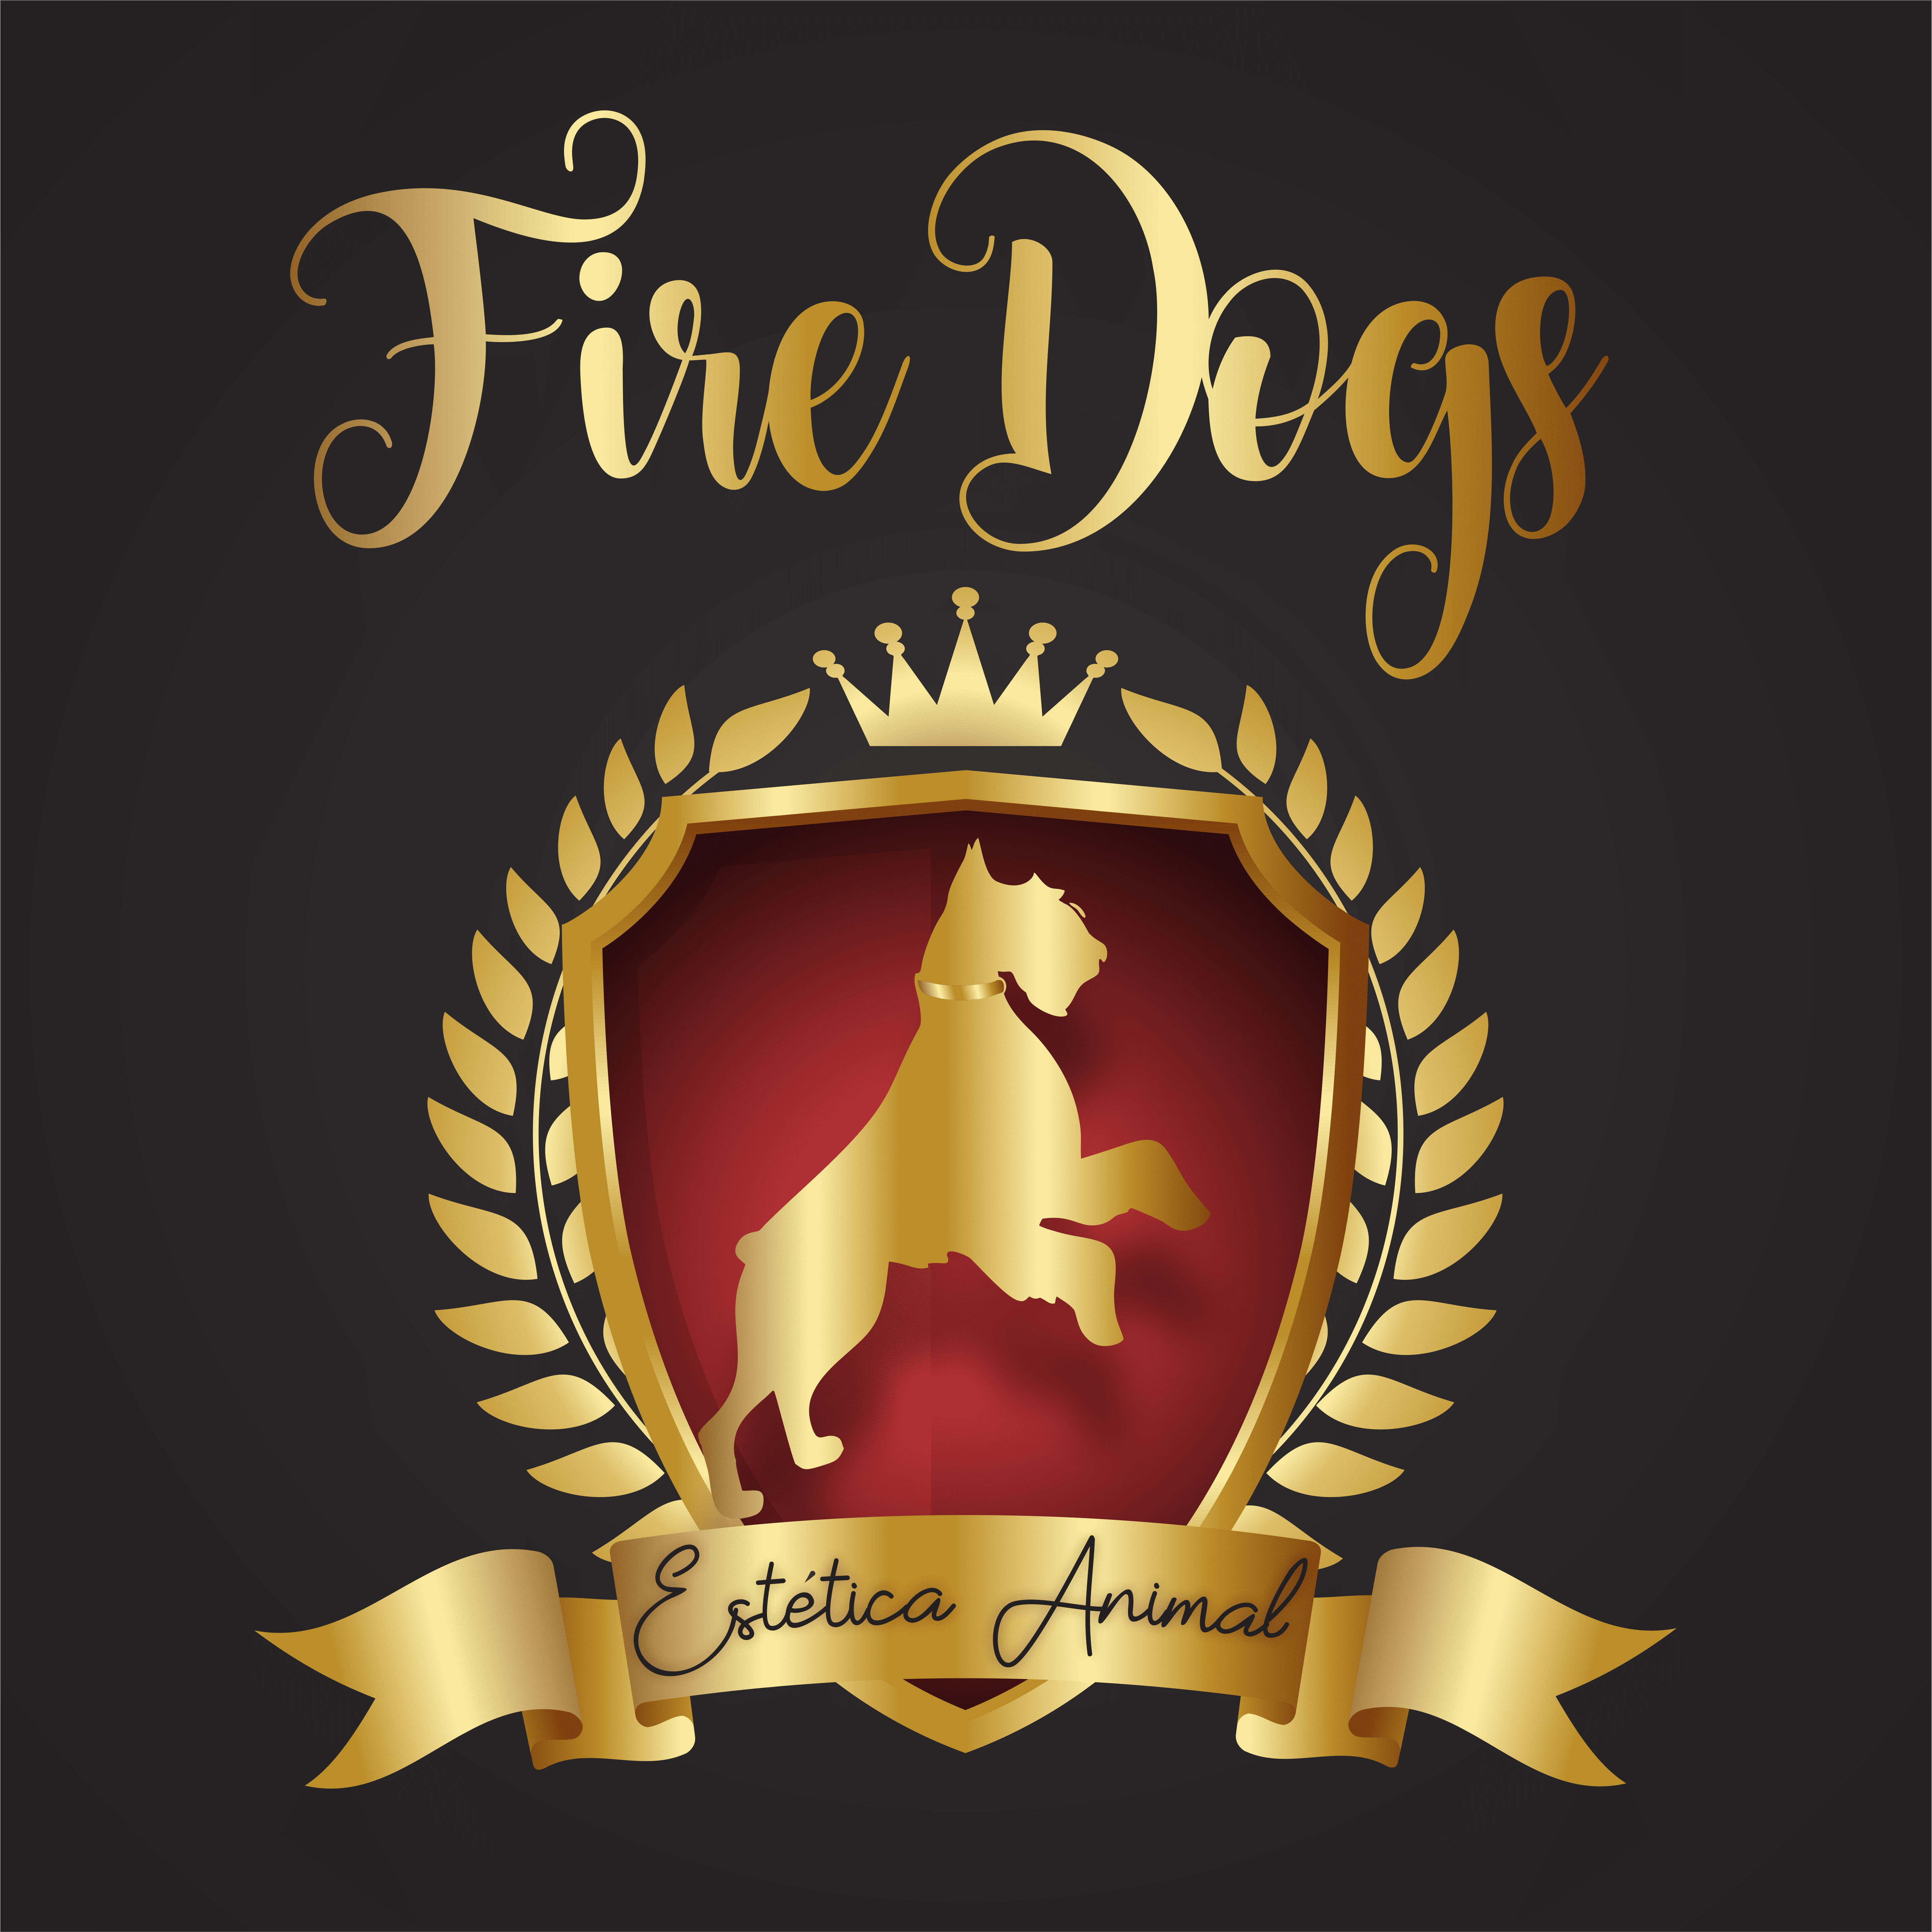 Fire Dogs - Estética Animal